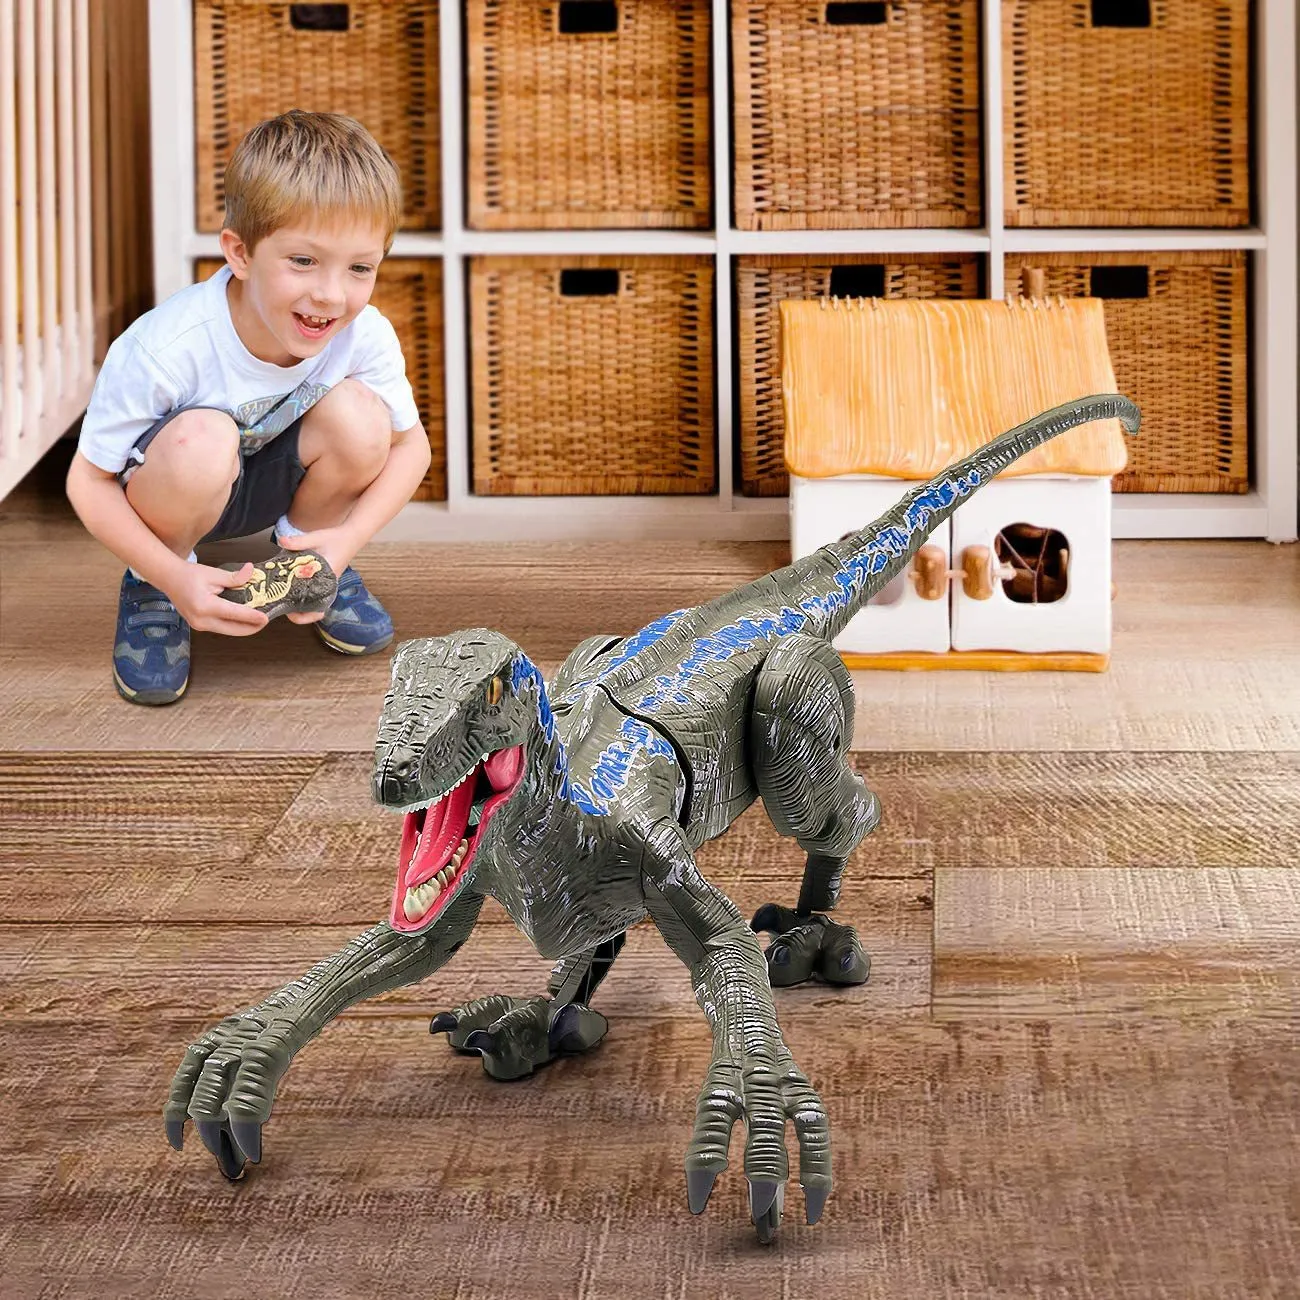 Dinosaure Robot Jouet Jeux Électronique Lay Oeufs Brachiosaurus